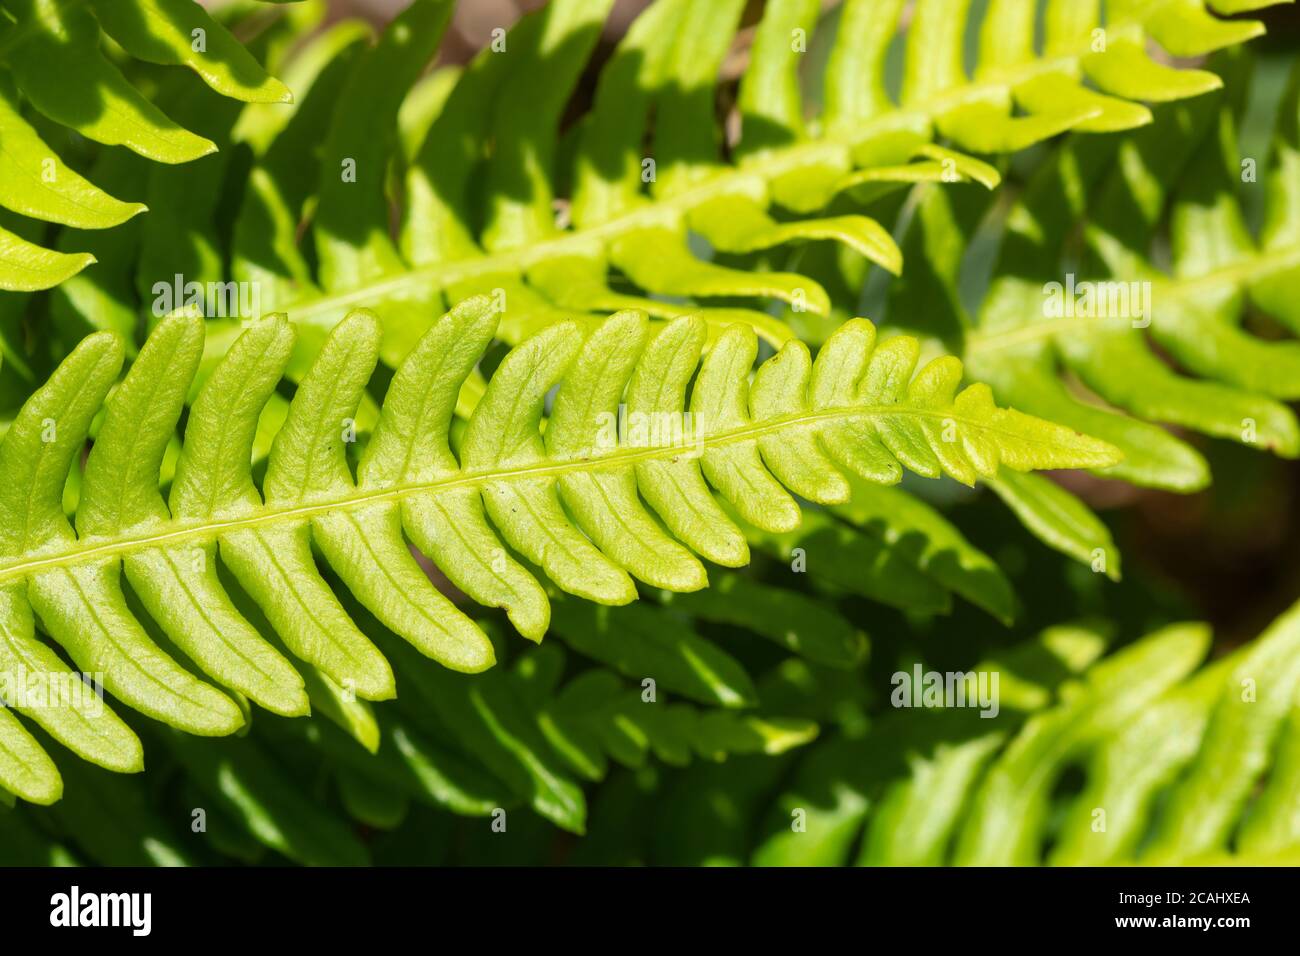 Hardfarn (Blechnum spicant), auch Hirsch Farn genannt, ein lebhafter grüner Farn, der immergrün ist und zwei Arten von Wedeln hat, UK. Nahaufnahme von sterilen Wedeln Stockfoto